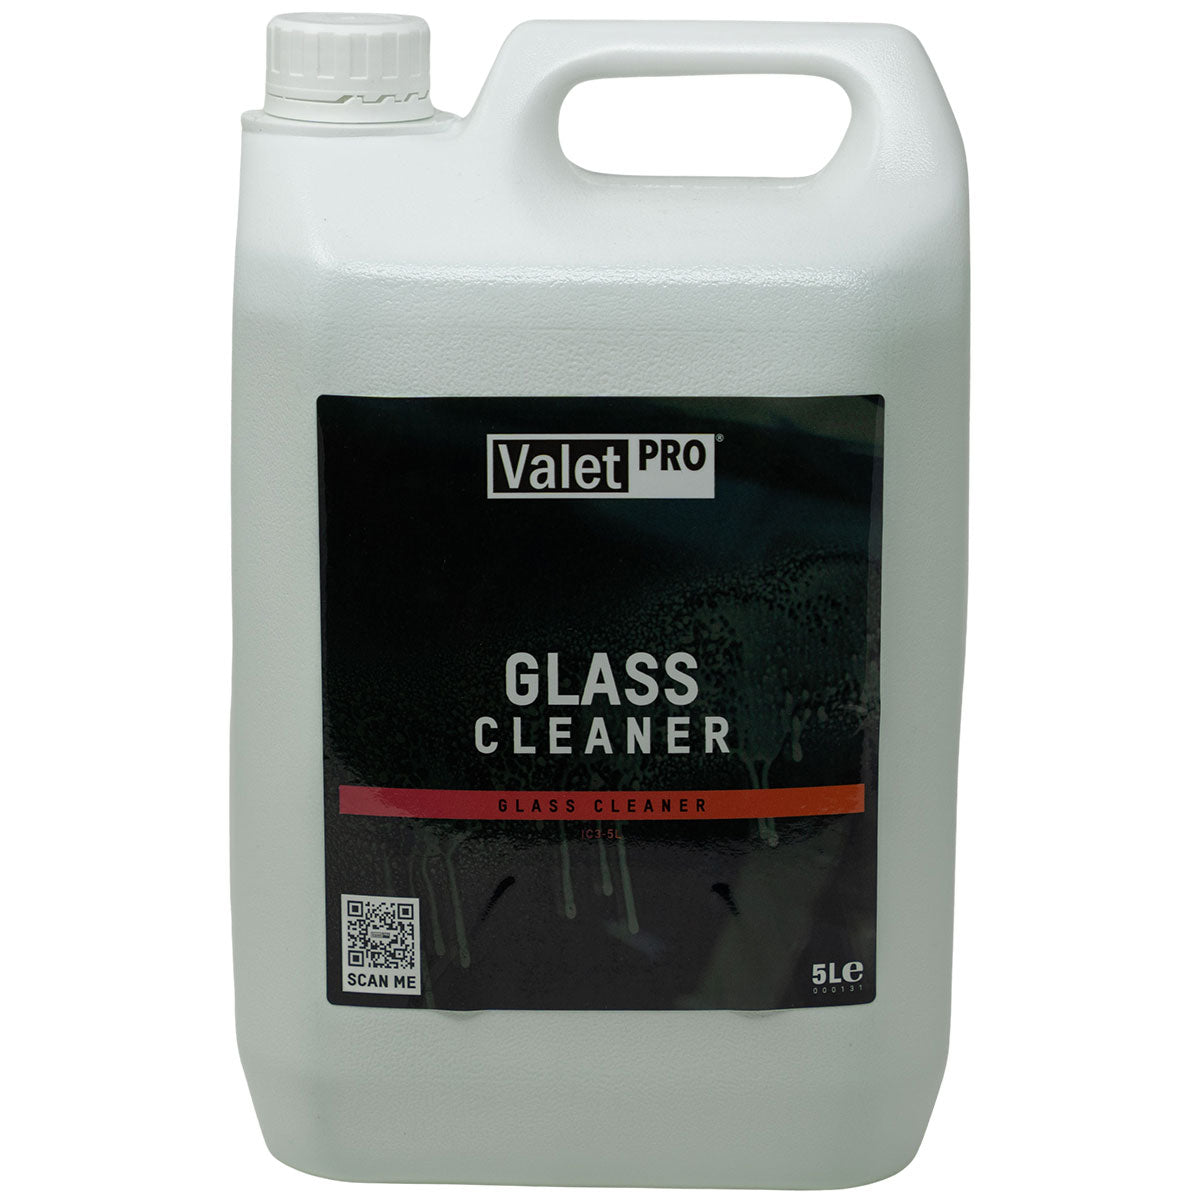 ValetPRO Glass Cleaner 5 Litre